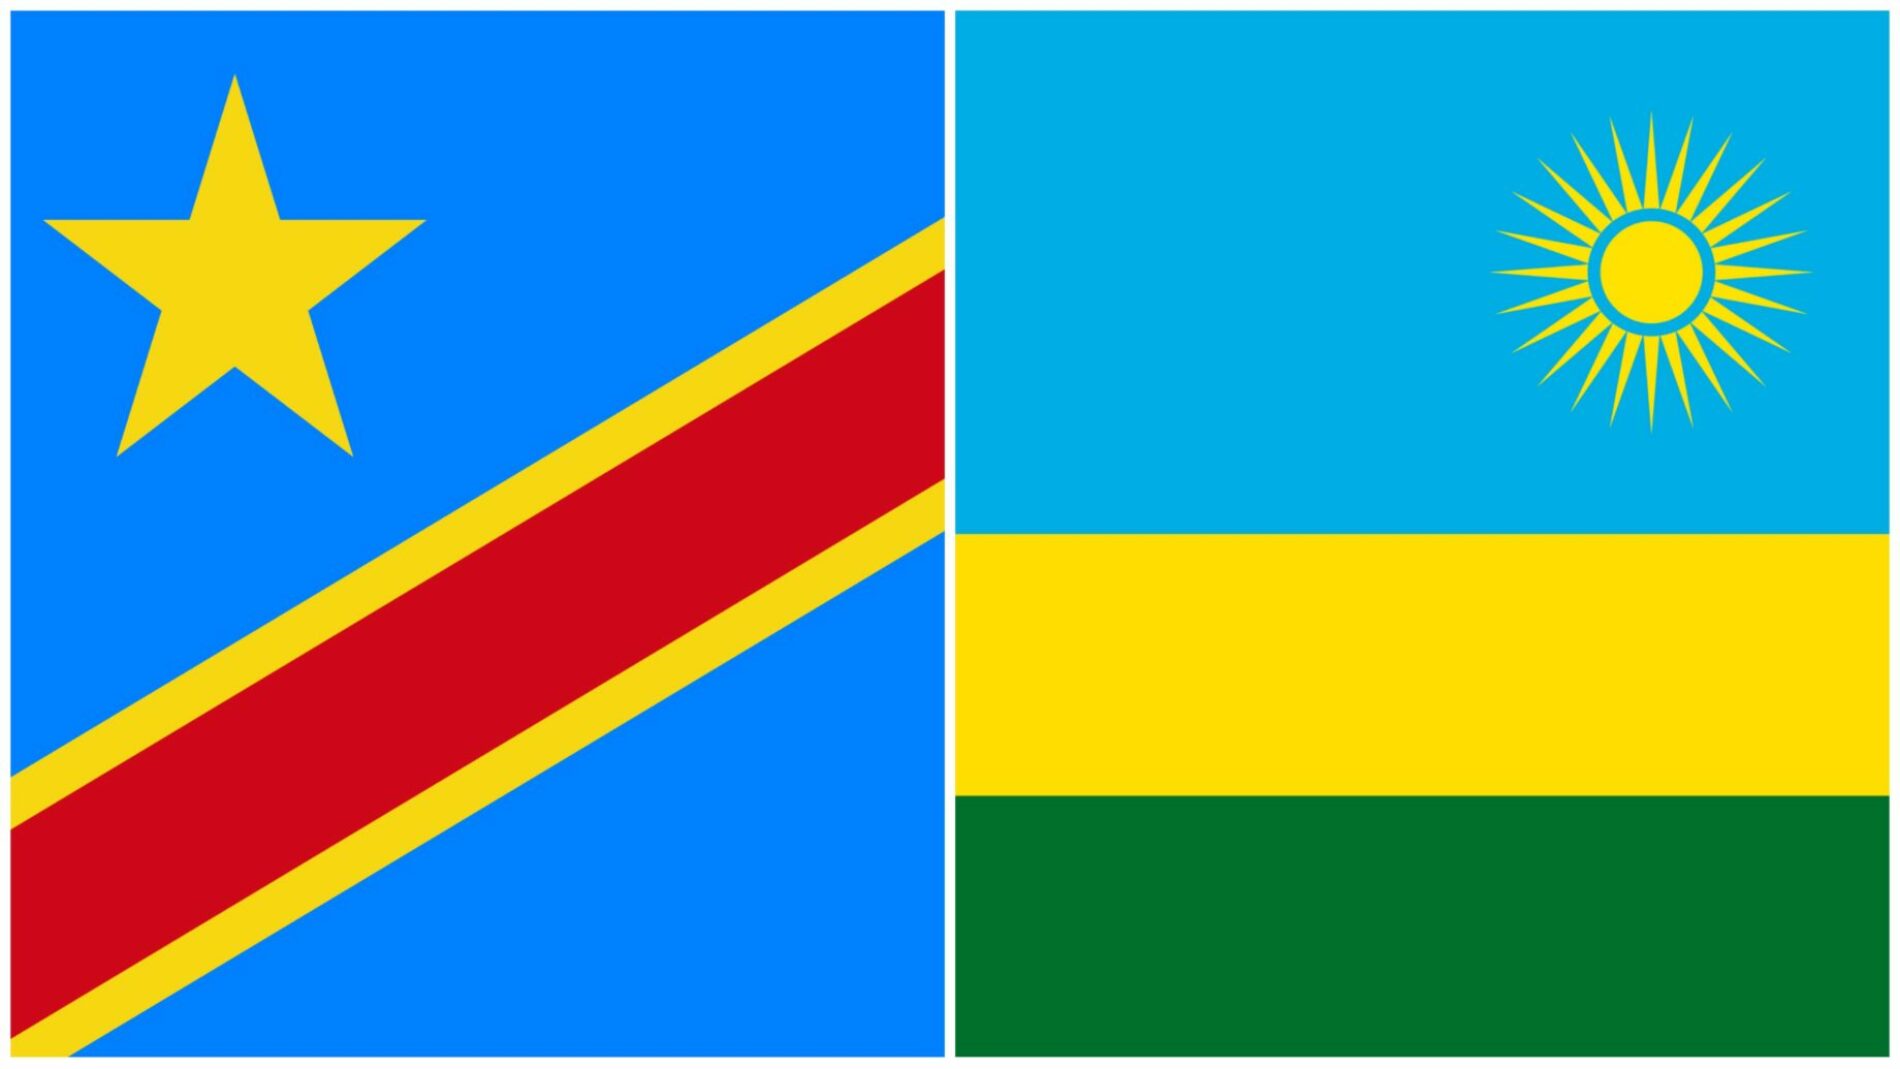 Rwanda-DRC: ndege ya kivita ya Kongo kwa mara nyingine imevunja sheria na kuingia katika anga ya Rwanda